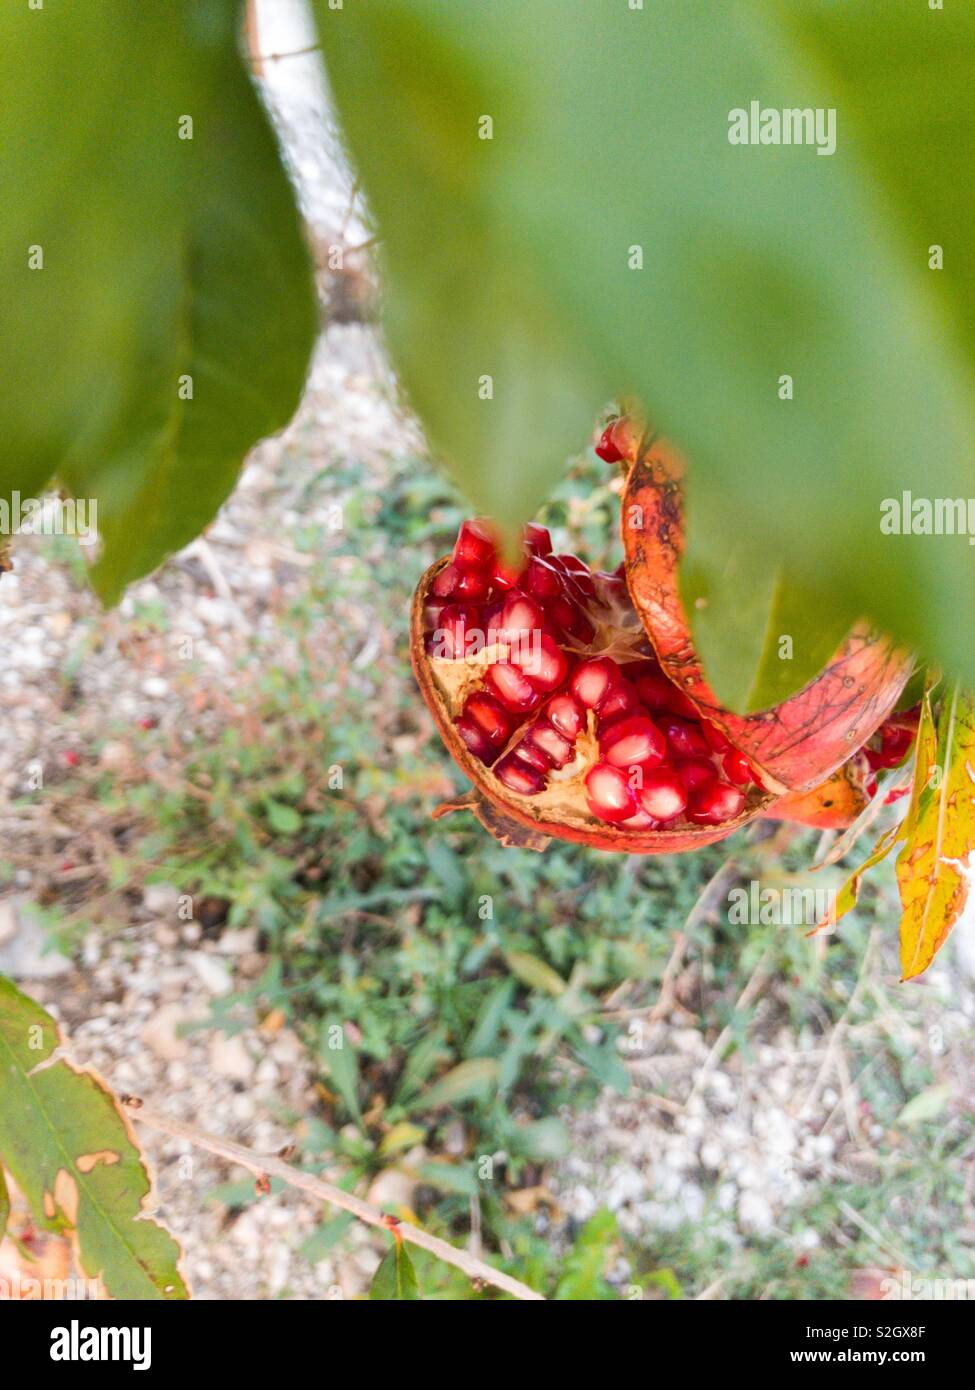 Cracked pomegranate fruit on tree Stock Photo